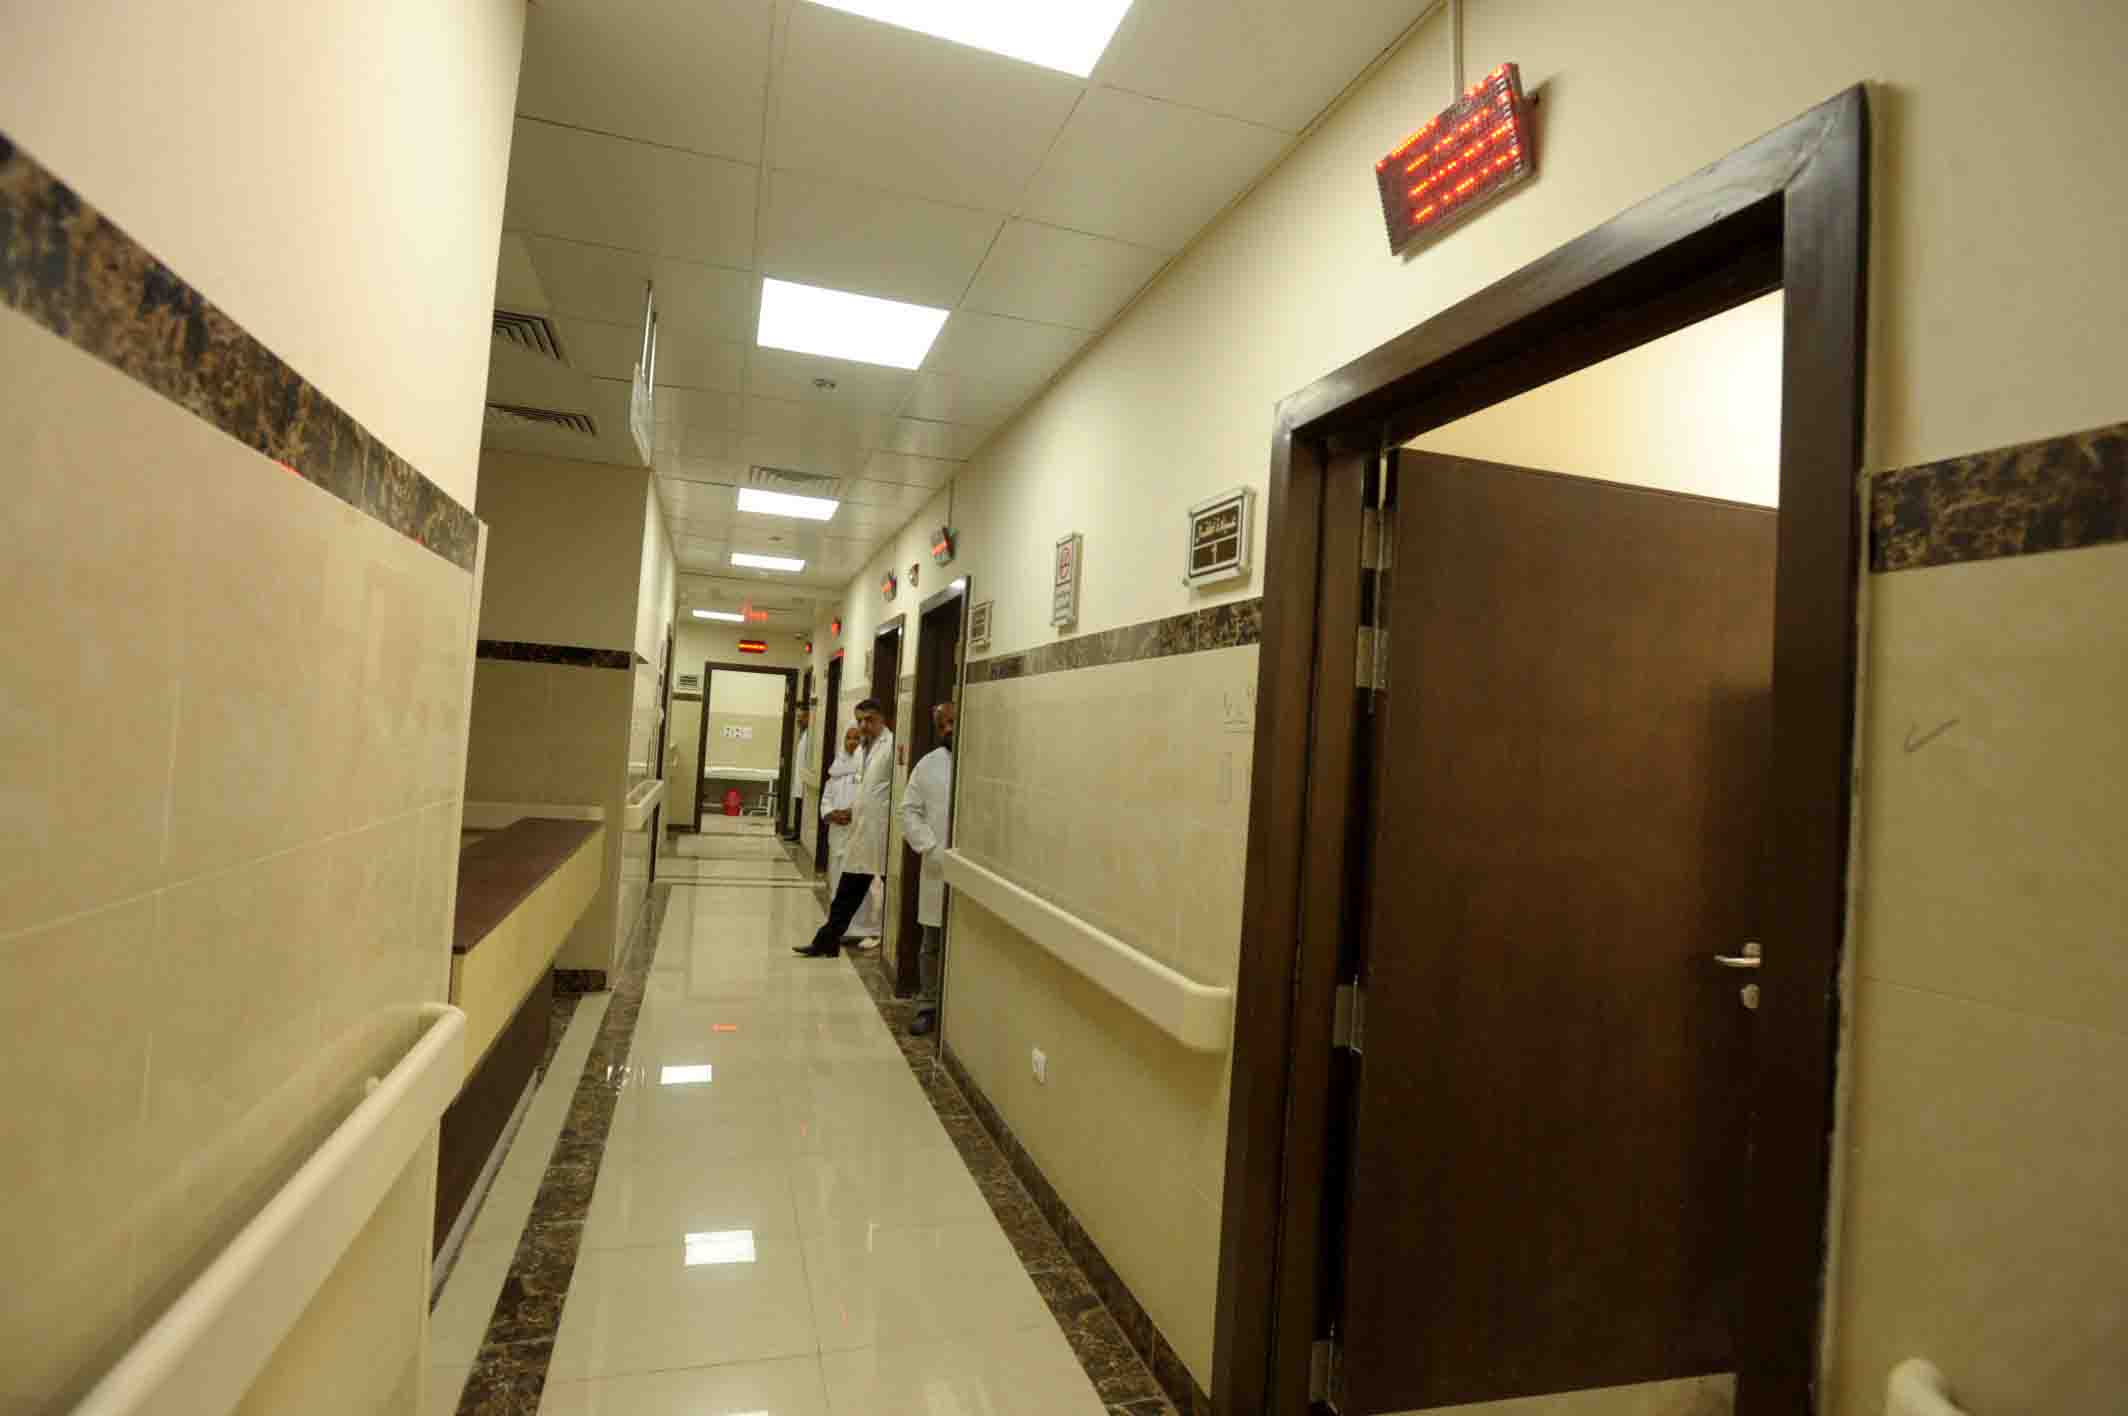 السيسى يفتتح مستشفى أرمنت المركزى ومستشفى الأقصر العام محافظة الأقصر